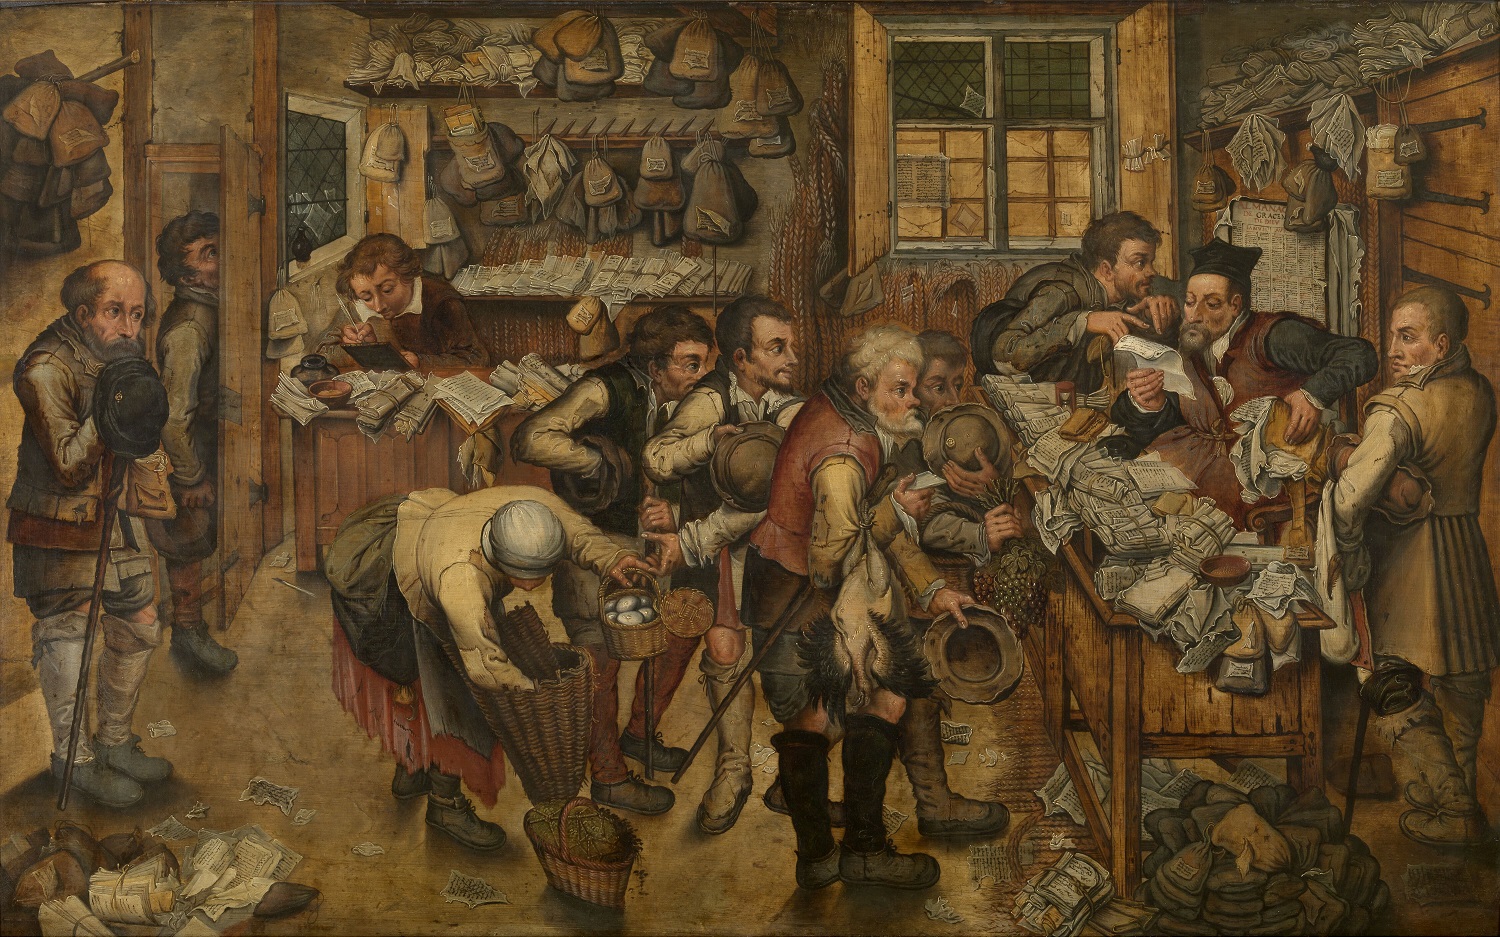 Dorpsadvocaat - Pieter II Brueghel - MSKGent - Artinflanders - foto Hugo Maertens - public domain